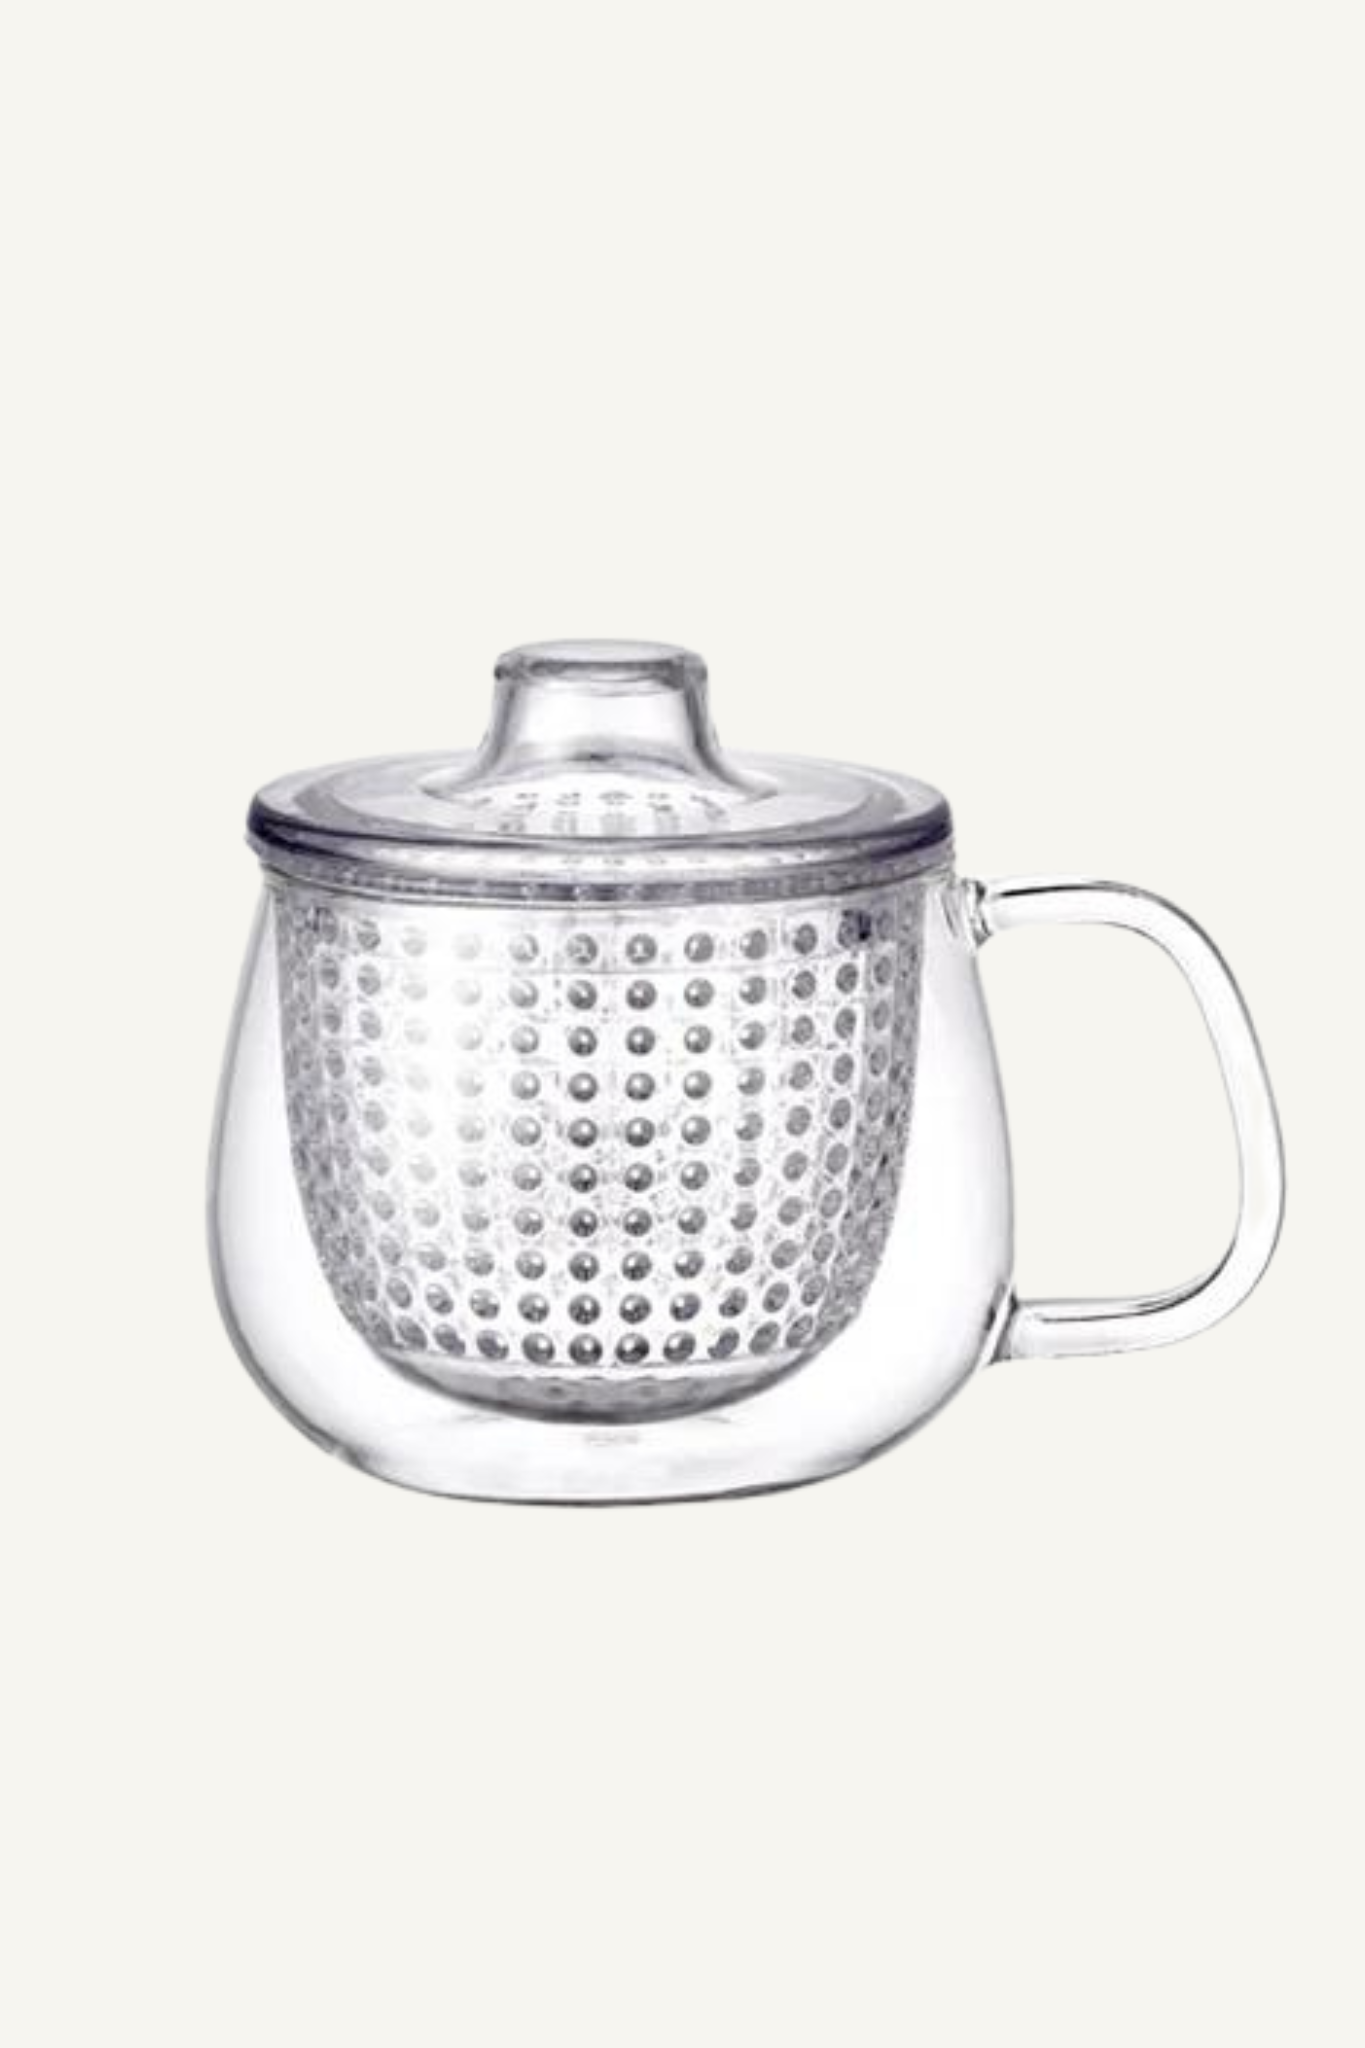 Kinto Unimug tea mug infuser